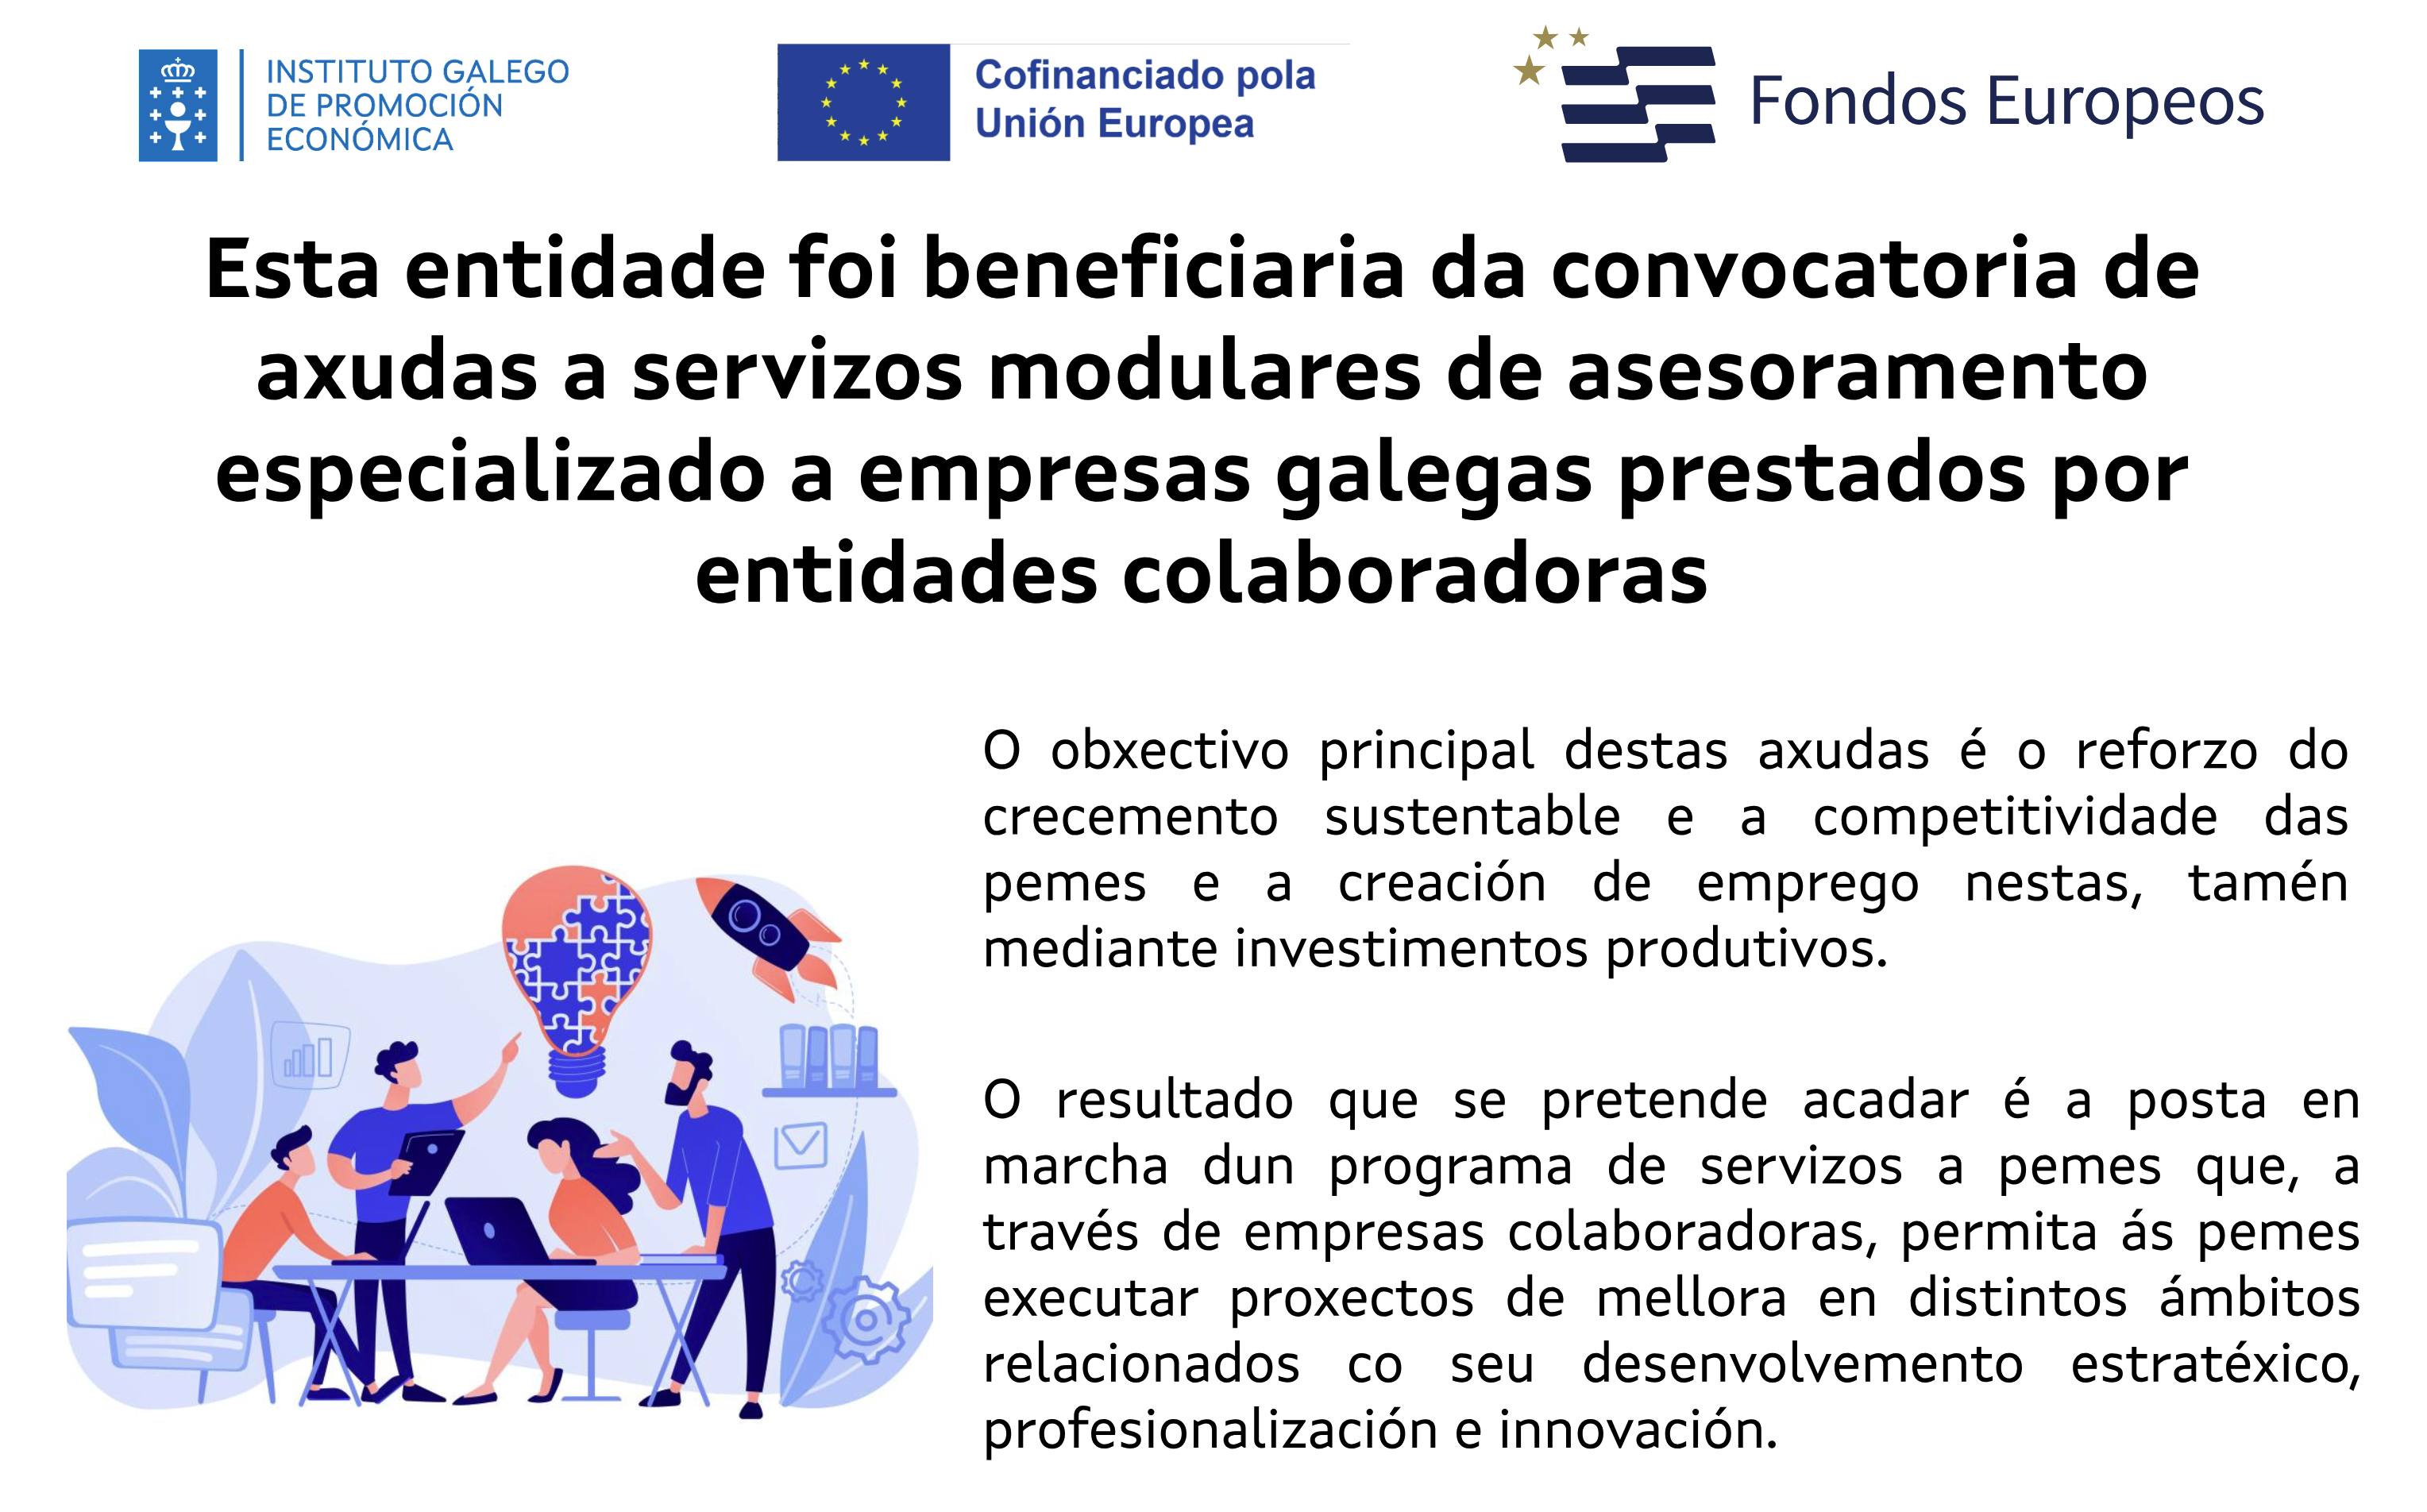 Esta entidade foi beneficiaria da convocatoria de axudas a servizos modulares de asesoramento especializado a empresas galegas prestados por entidades colaboradoras